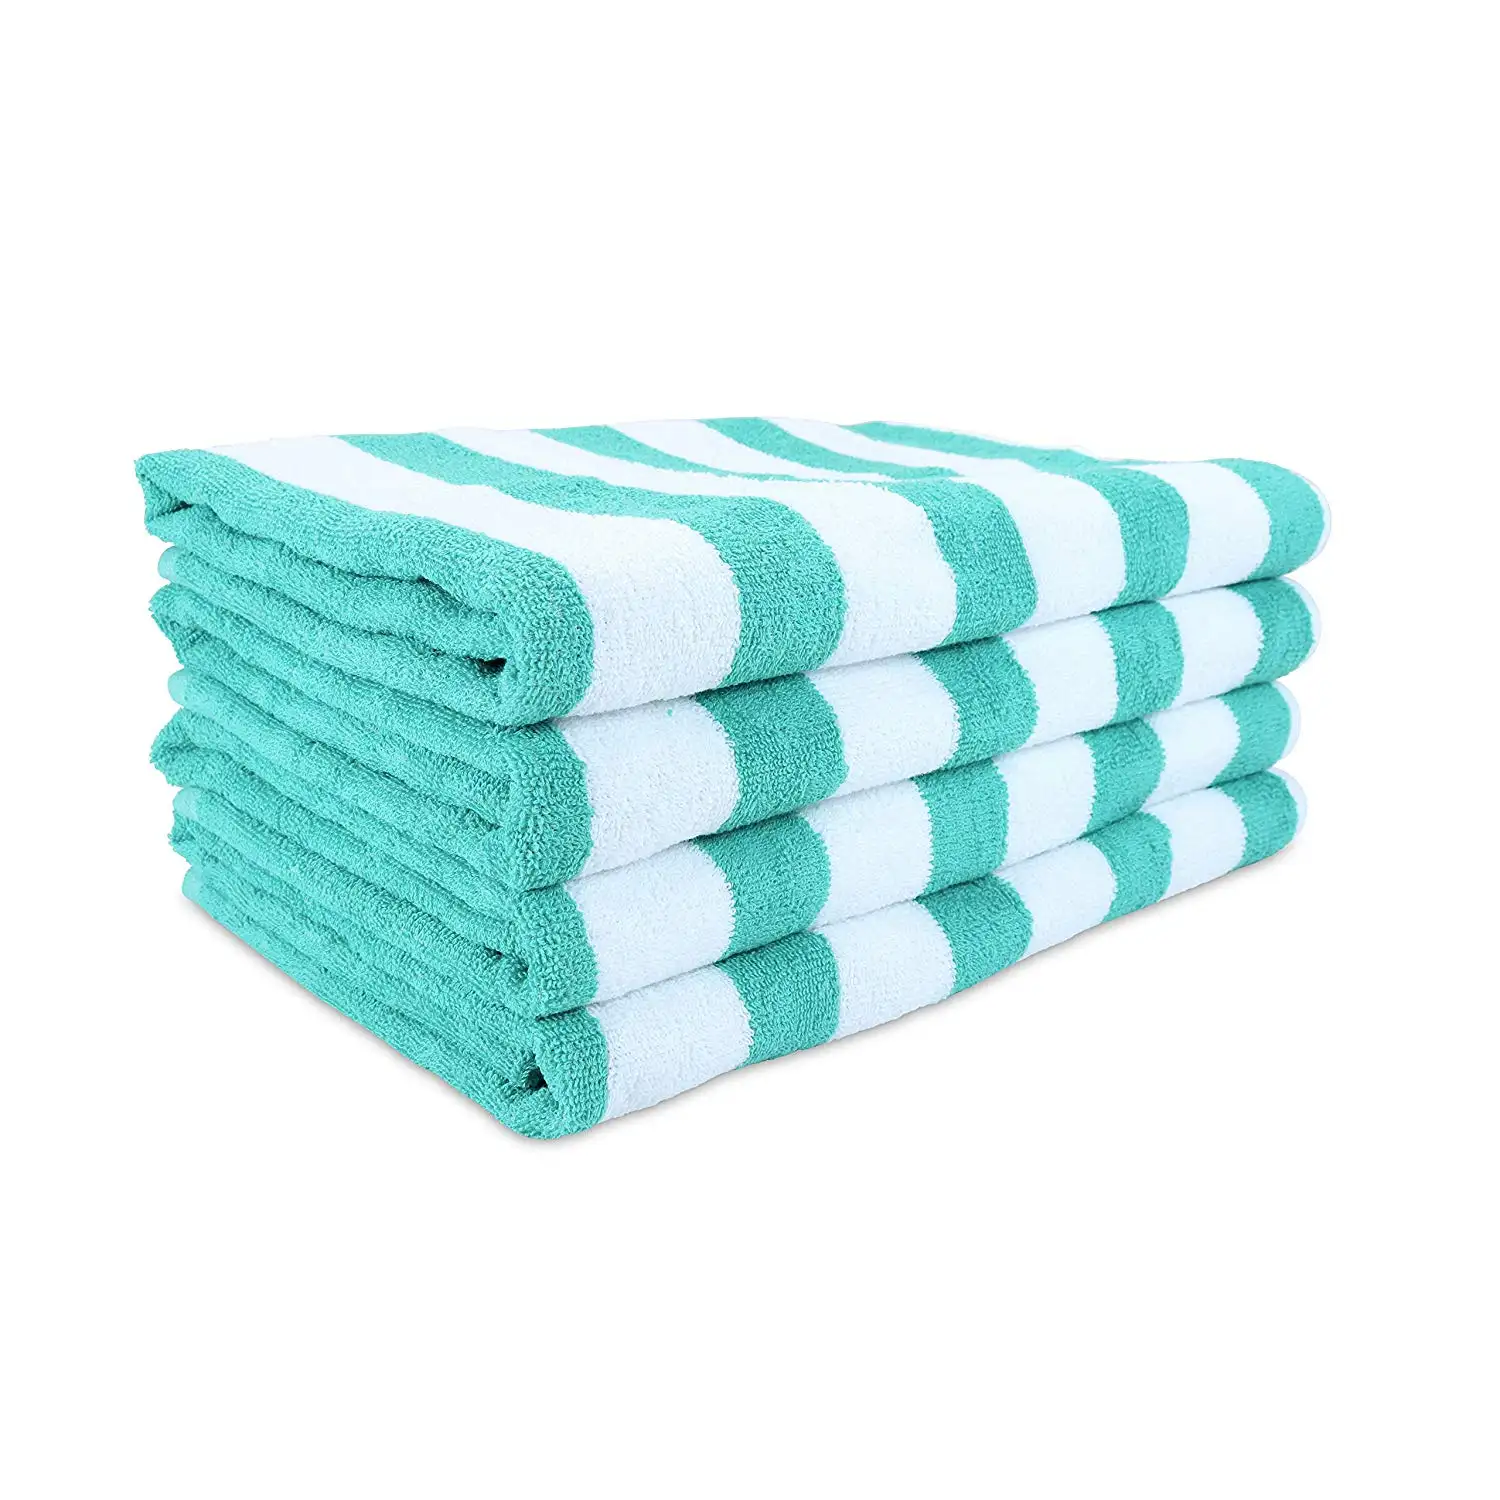 Atacadores de toalha de algodão personalizado, tamanho grande, azul e branco, spa, piscina, spa, tecido, toalha para praia